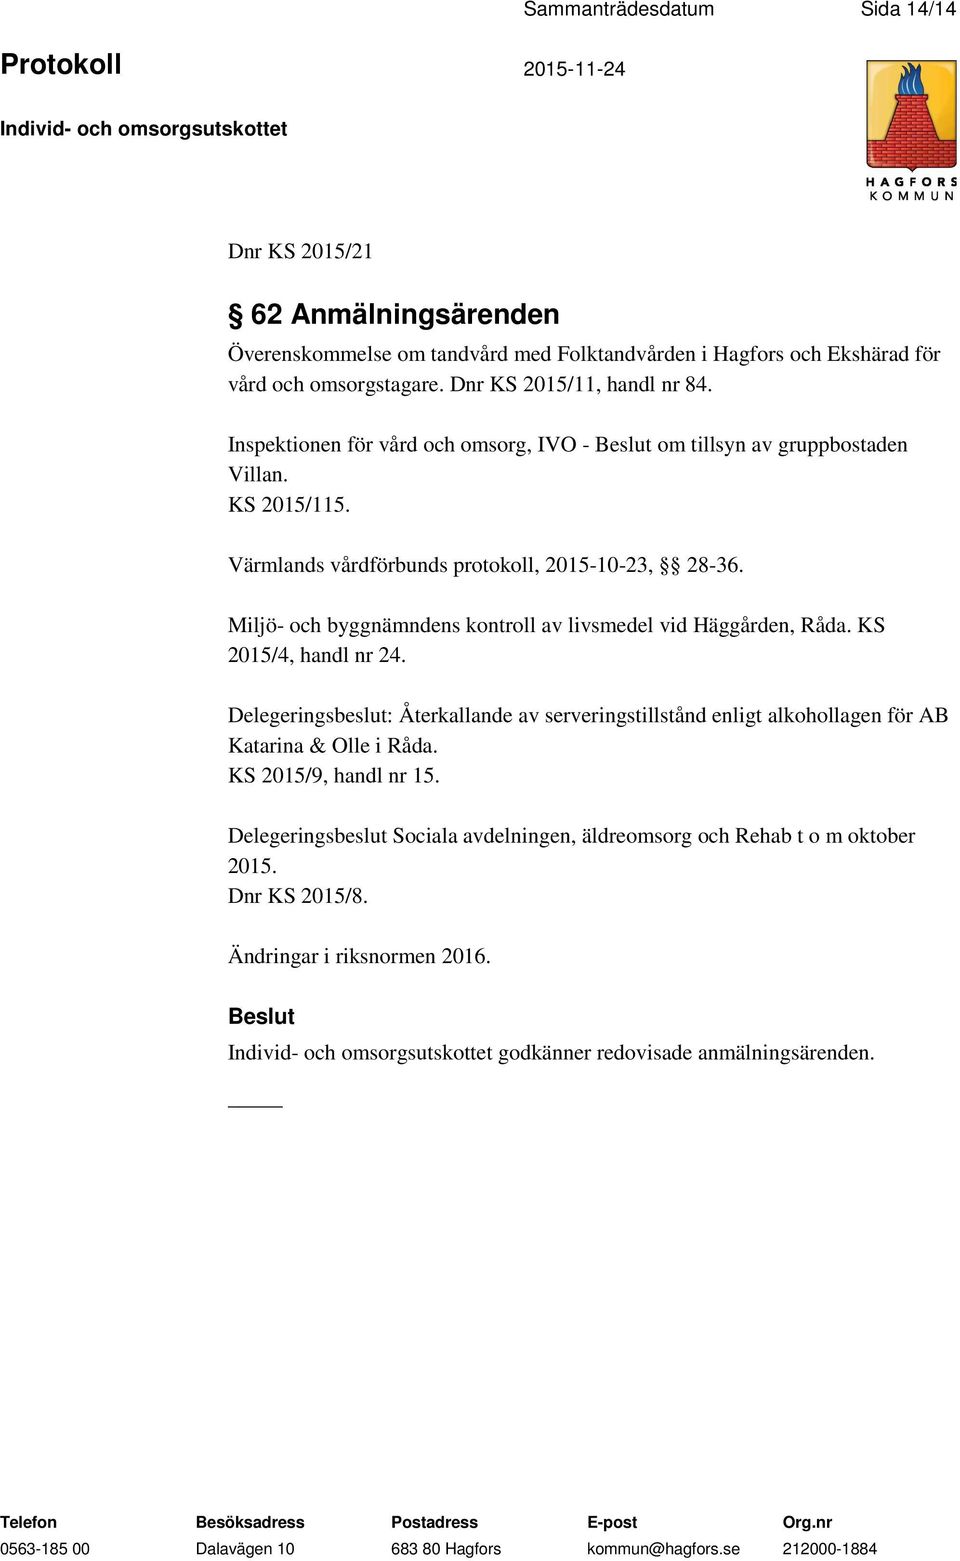 Miljö- och byggnämndens kontroll av livsmedel vid Häggården, Råda. KS 2015/4, handl nr 24.